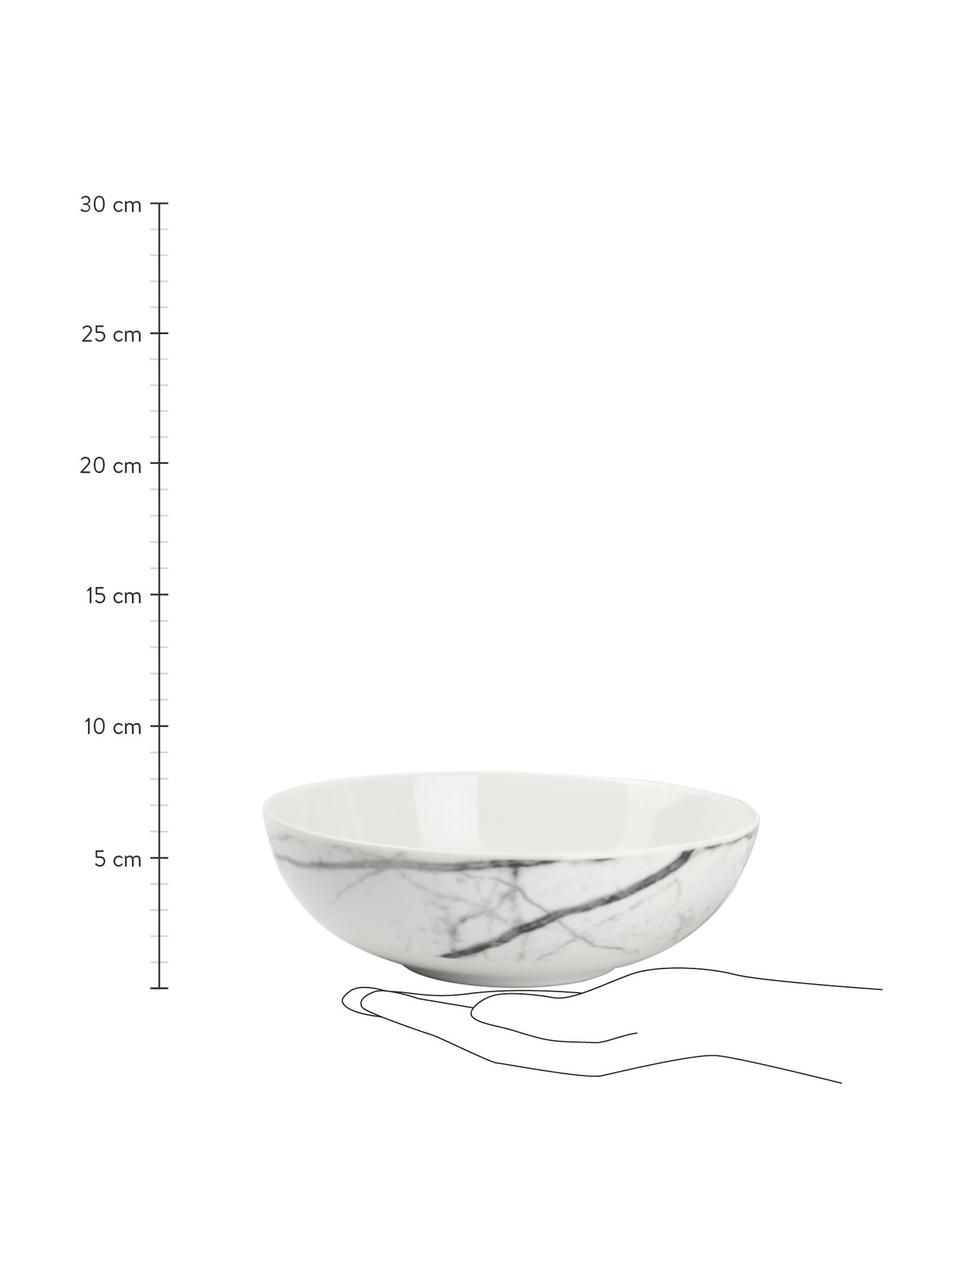 Geschirr-Set Stone aus Porzellan in Weiß, 4 Personen (20-tlg.), Porzellan, Weiß, Schwarz, Set mit verschiedenen Größen